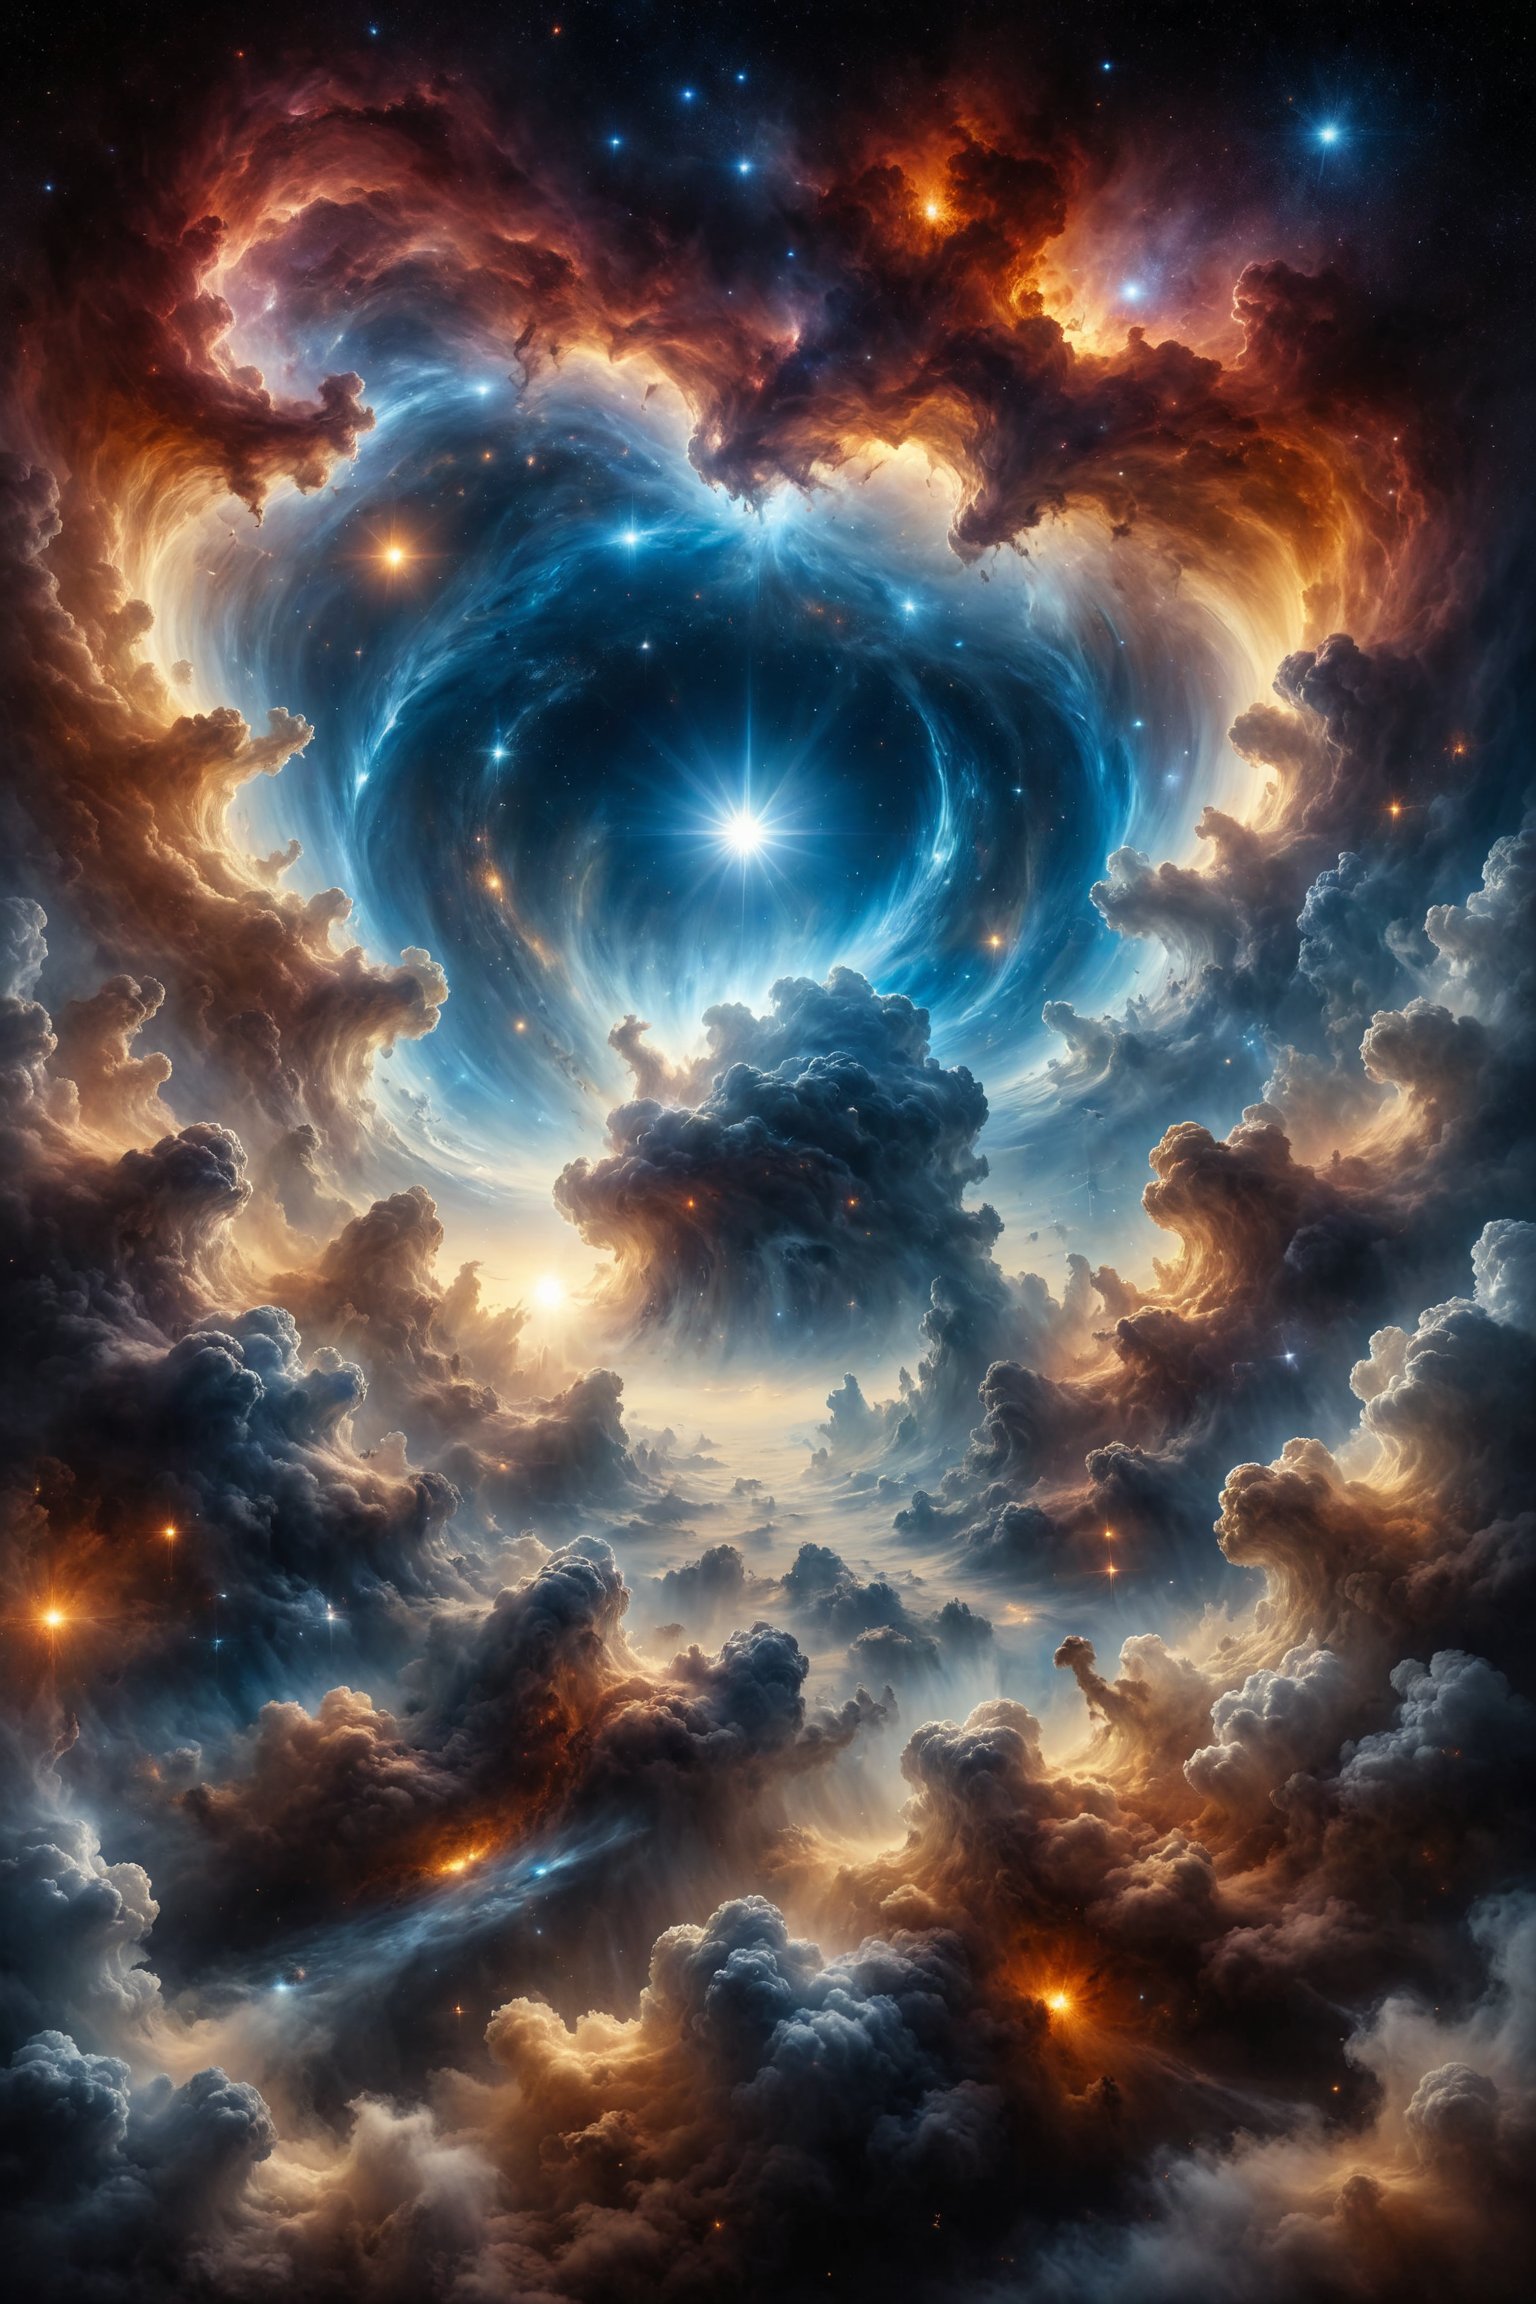 genera una hermosa escena de fantacia, dentro del espacio del cielo, rodeado de nubes etereas, Una estrella centelleante en la Vía Láctea, emanando paz y serenidad a través del vasto cosmos.